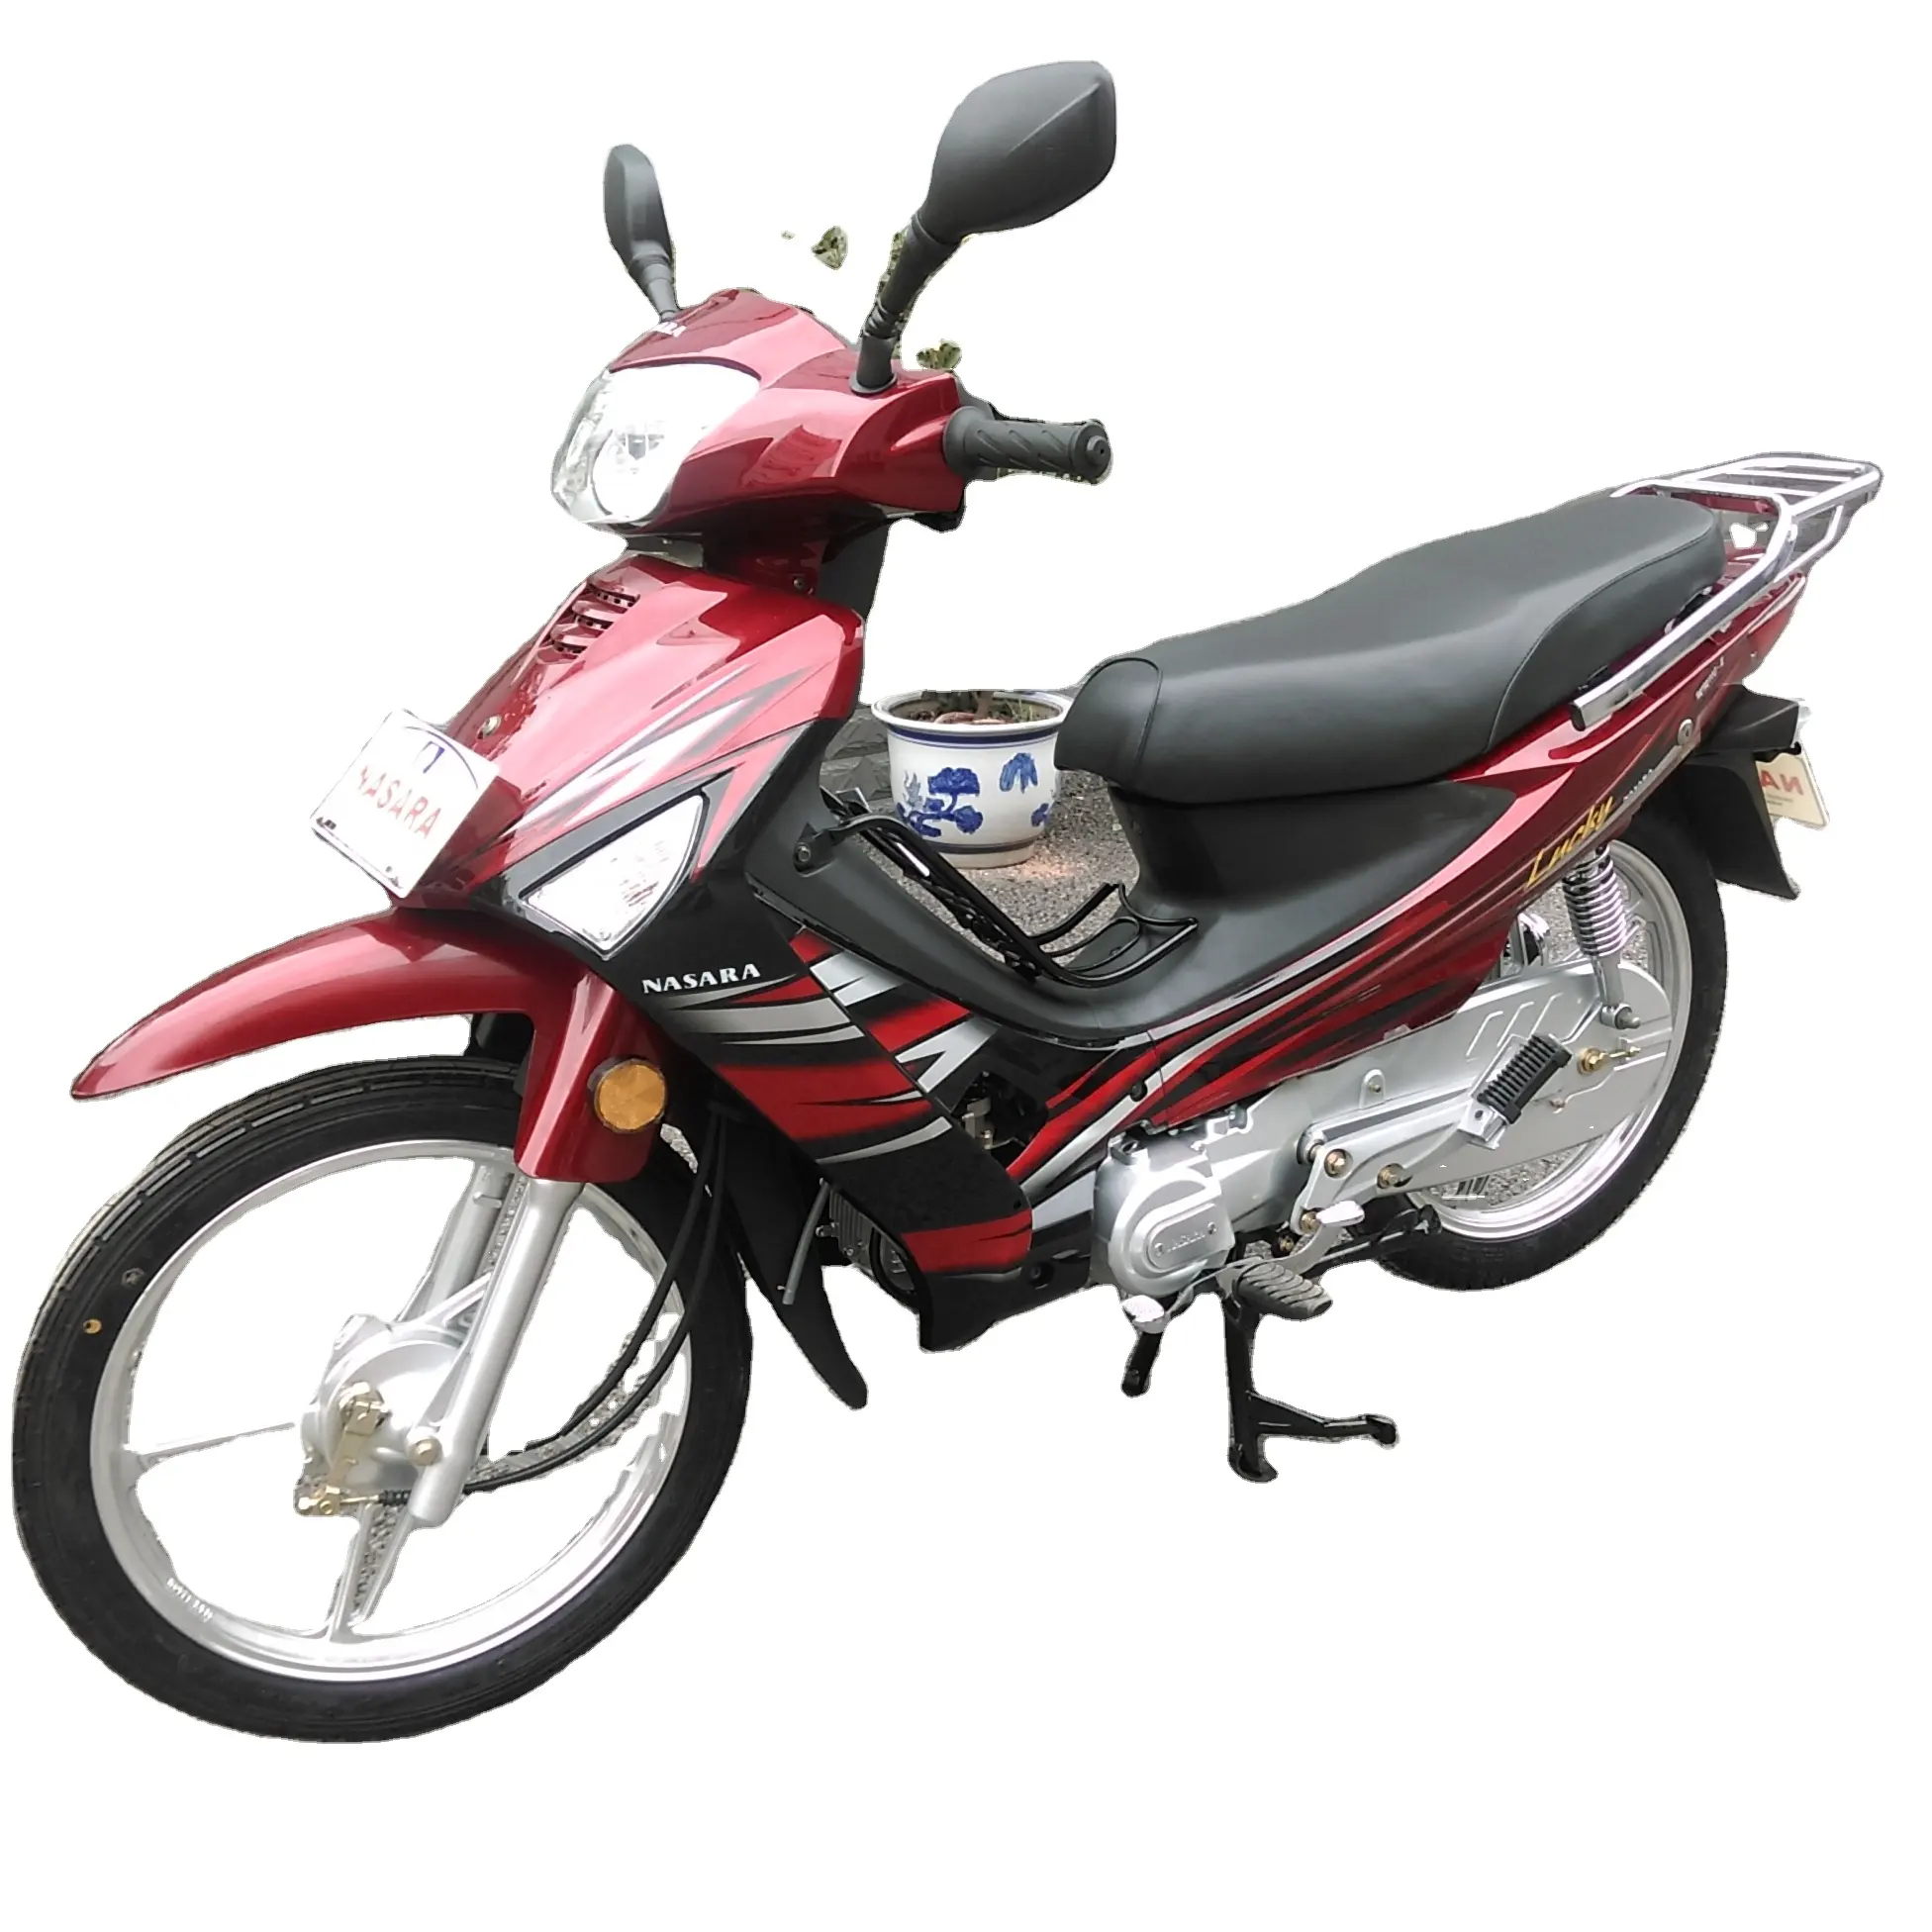 Motocicleta de importação barata para mulheres, bicicletas 110cc motos cub baratos para venda